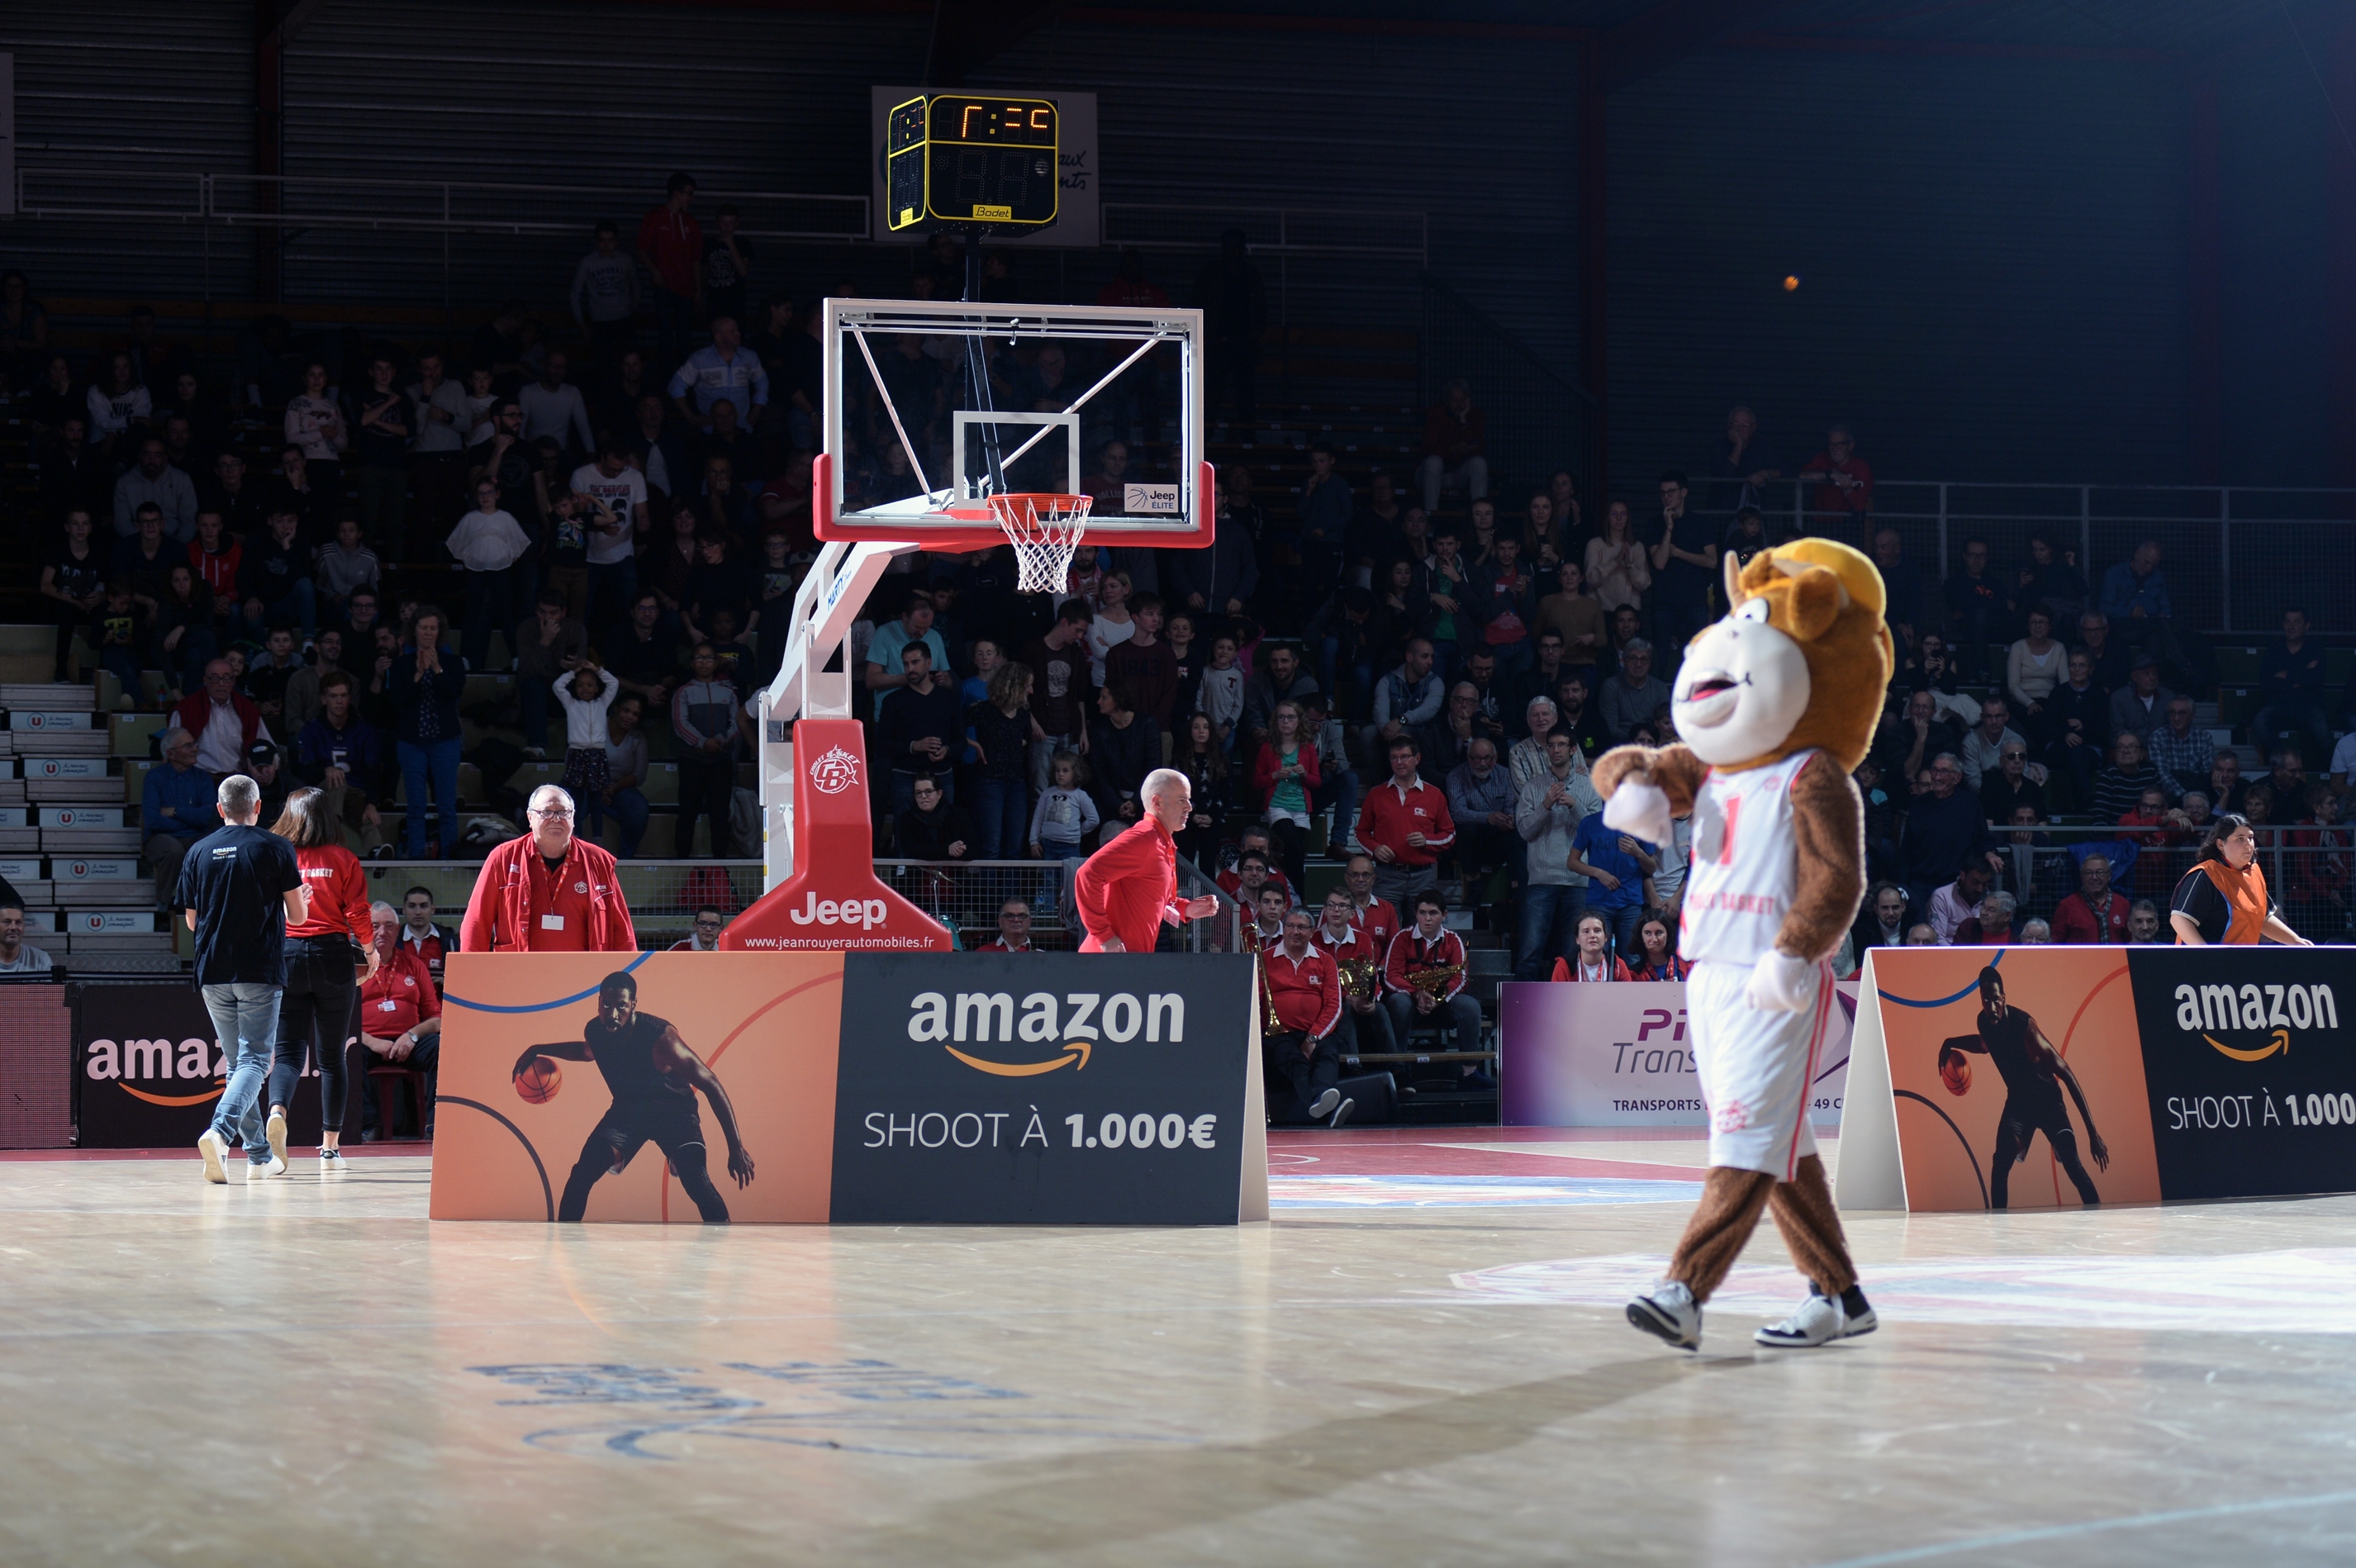 Cholet Basket - Monaco (10/11/18)